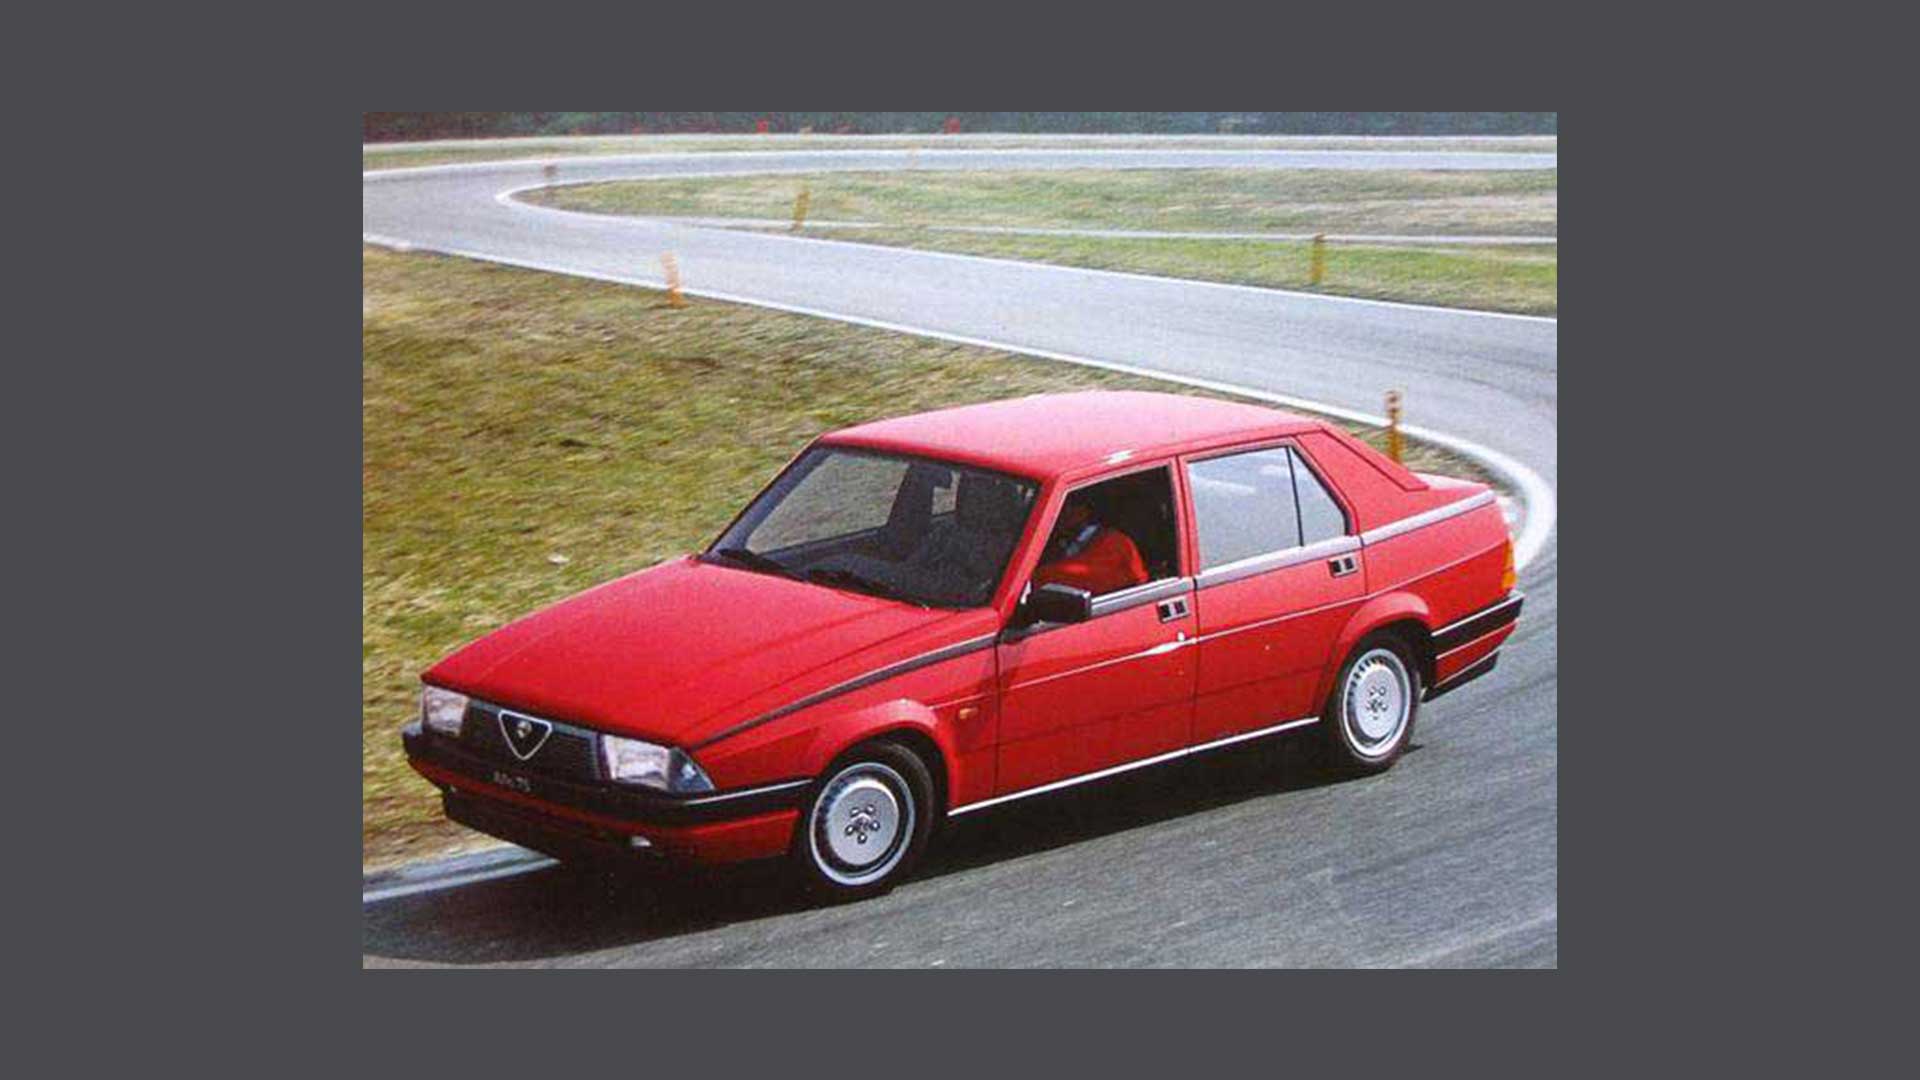 Foto storica di un’automobile Alfa Romeo rossa